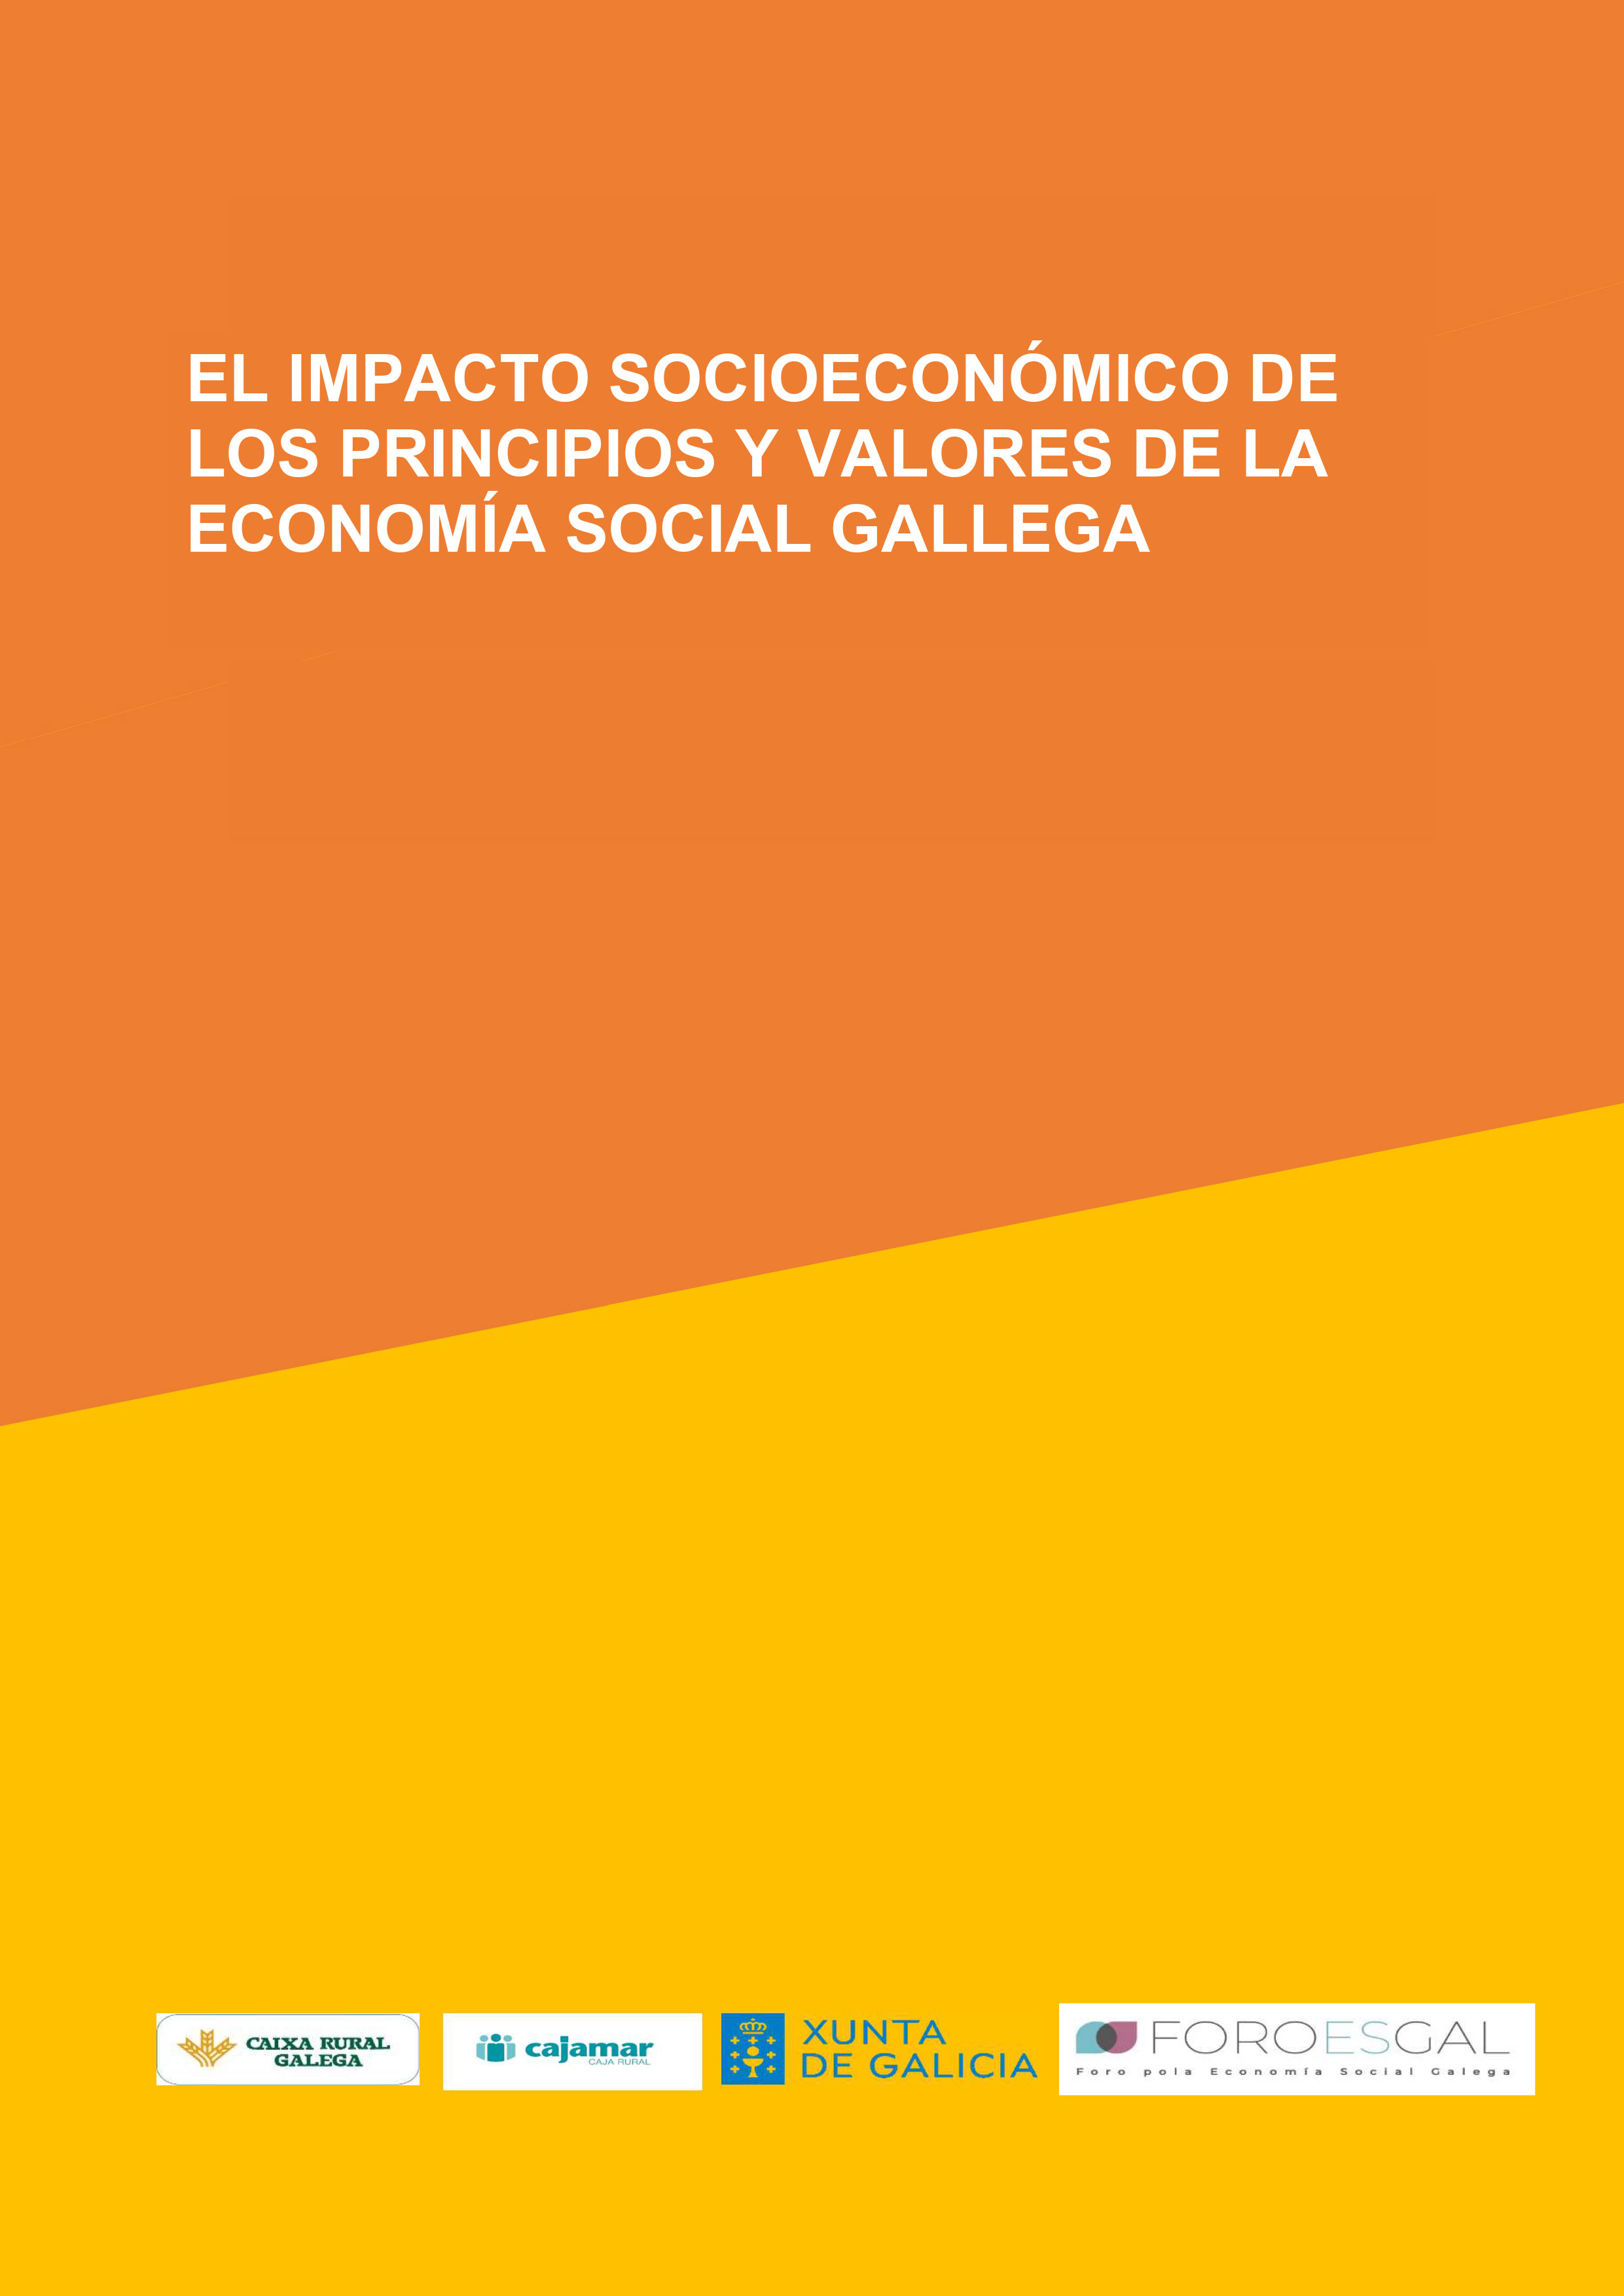 El impacto socioeconómico de los principios y valores de la economía social gallega